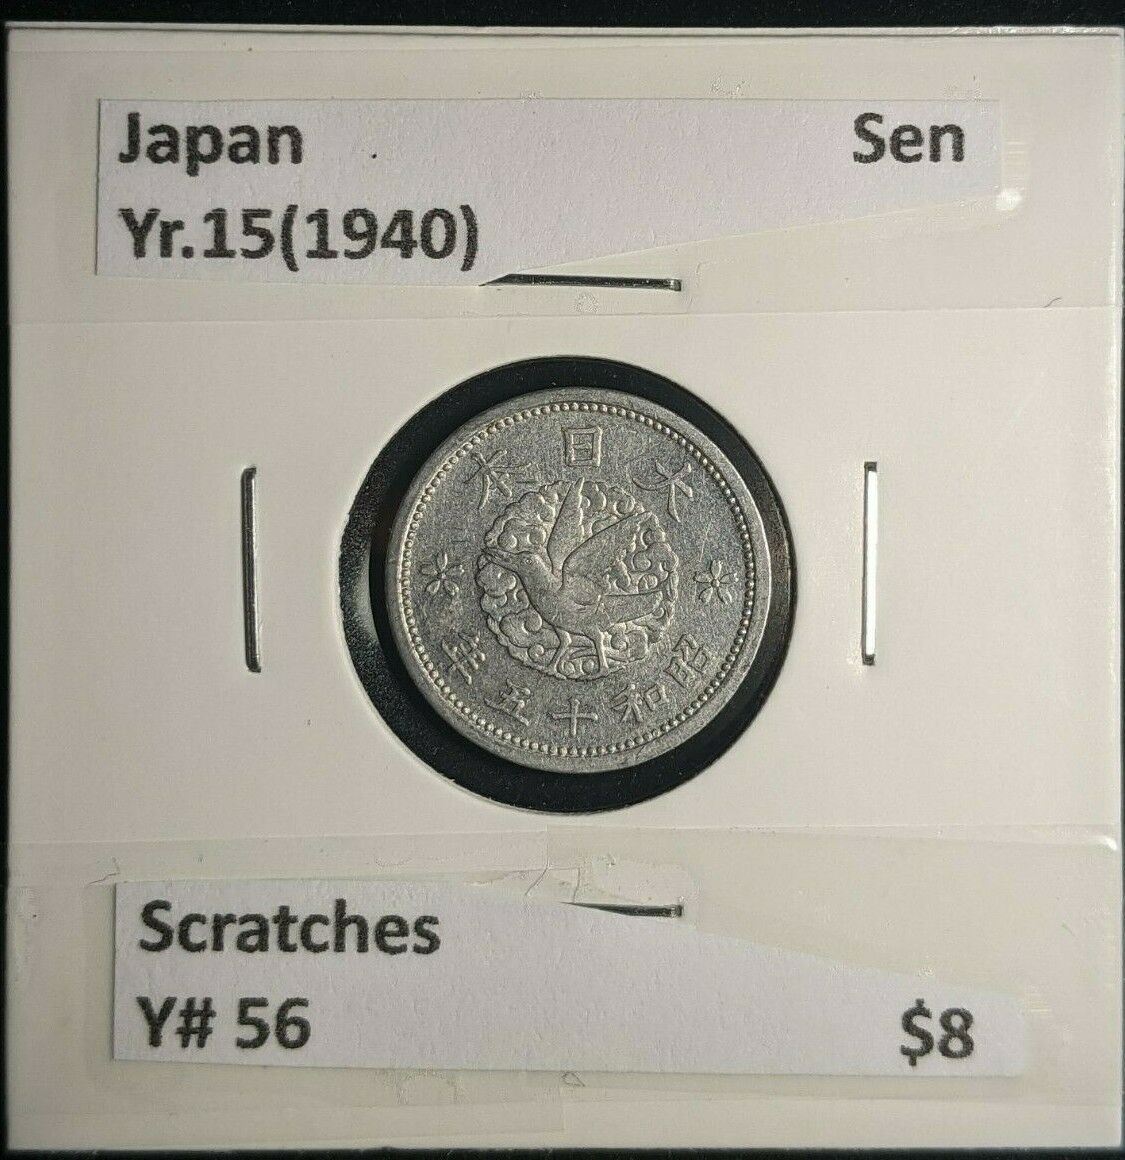 Japan Yr.15(1940) Sen Y# 56 Scratches #226  10A